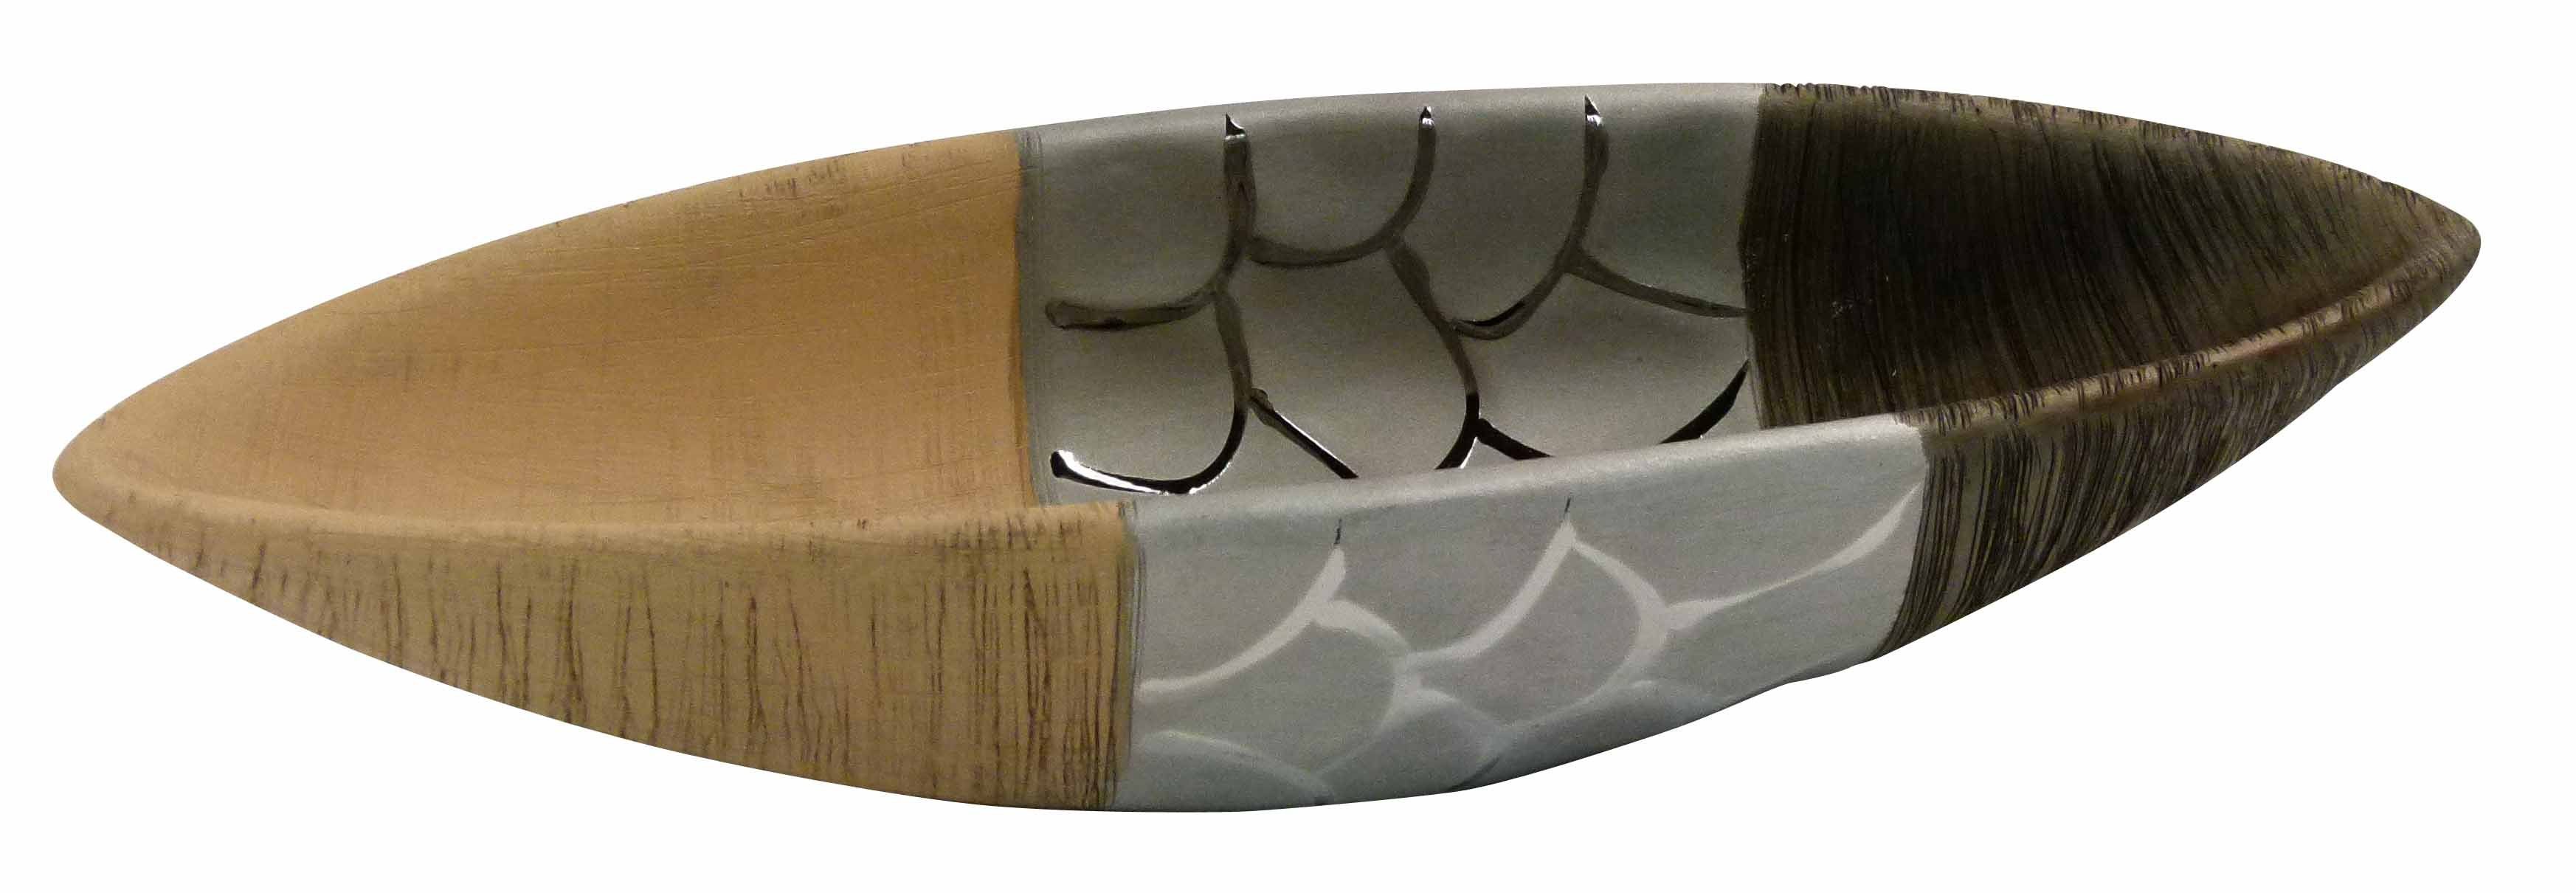 GlasArt Dekoschale Deko-schale Obstschale Schale Boot-form Braun Natur 32,5x10,5cm | Dekoschalen